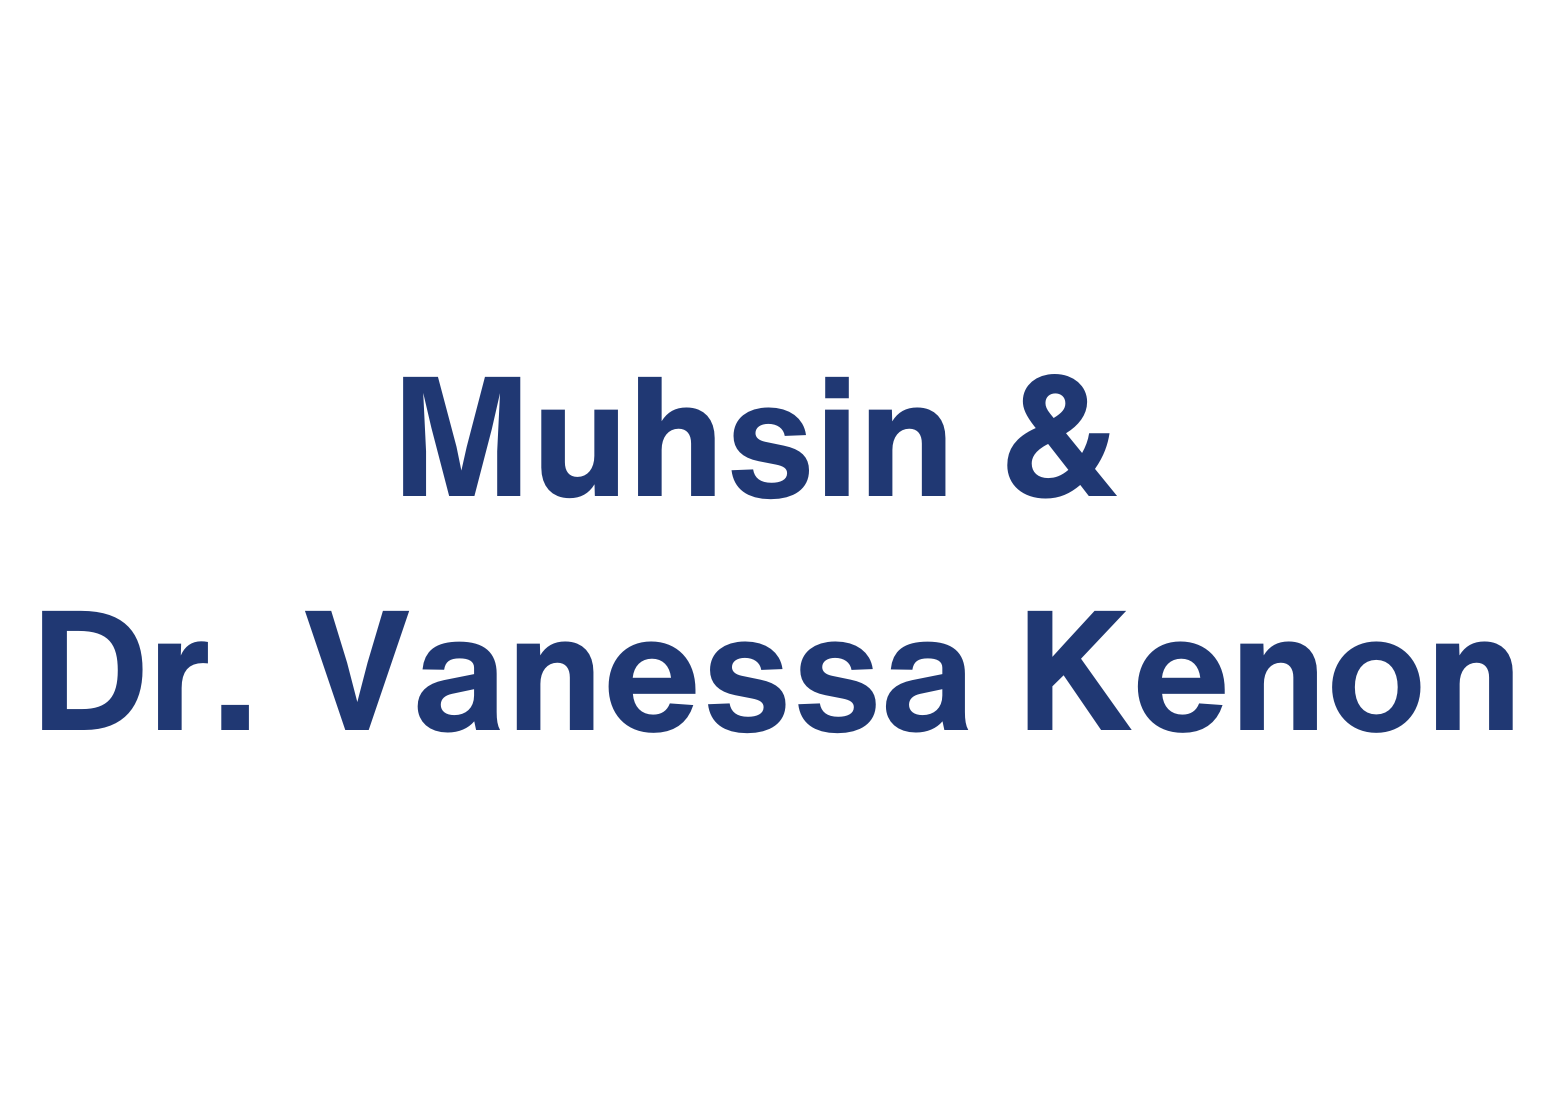 Muhsin & Dr. Vanessa Kenon